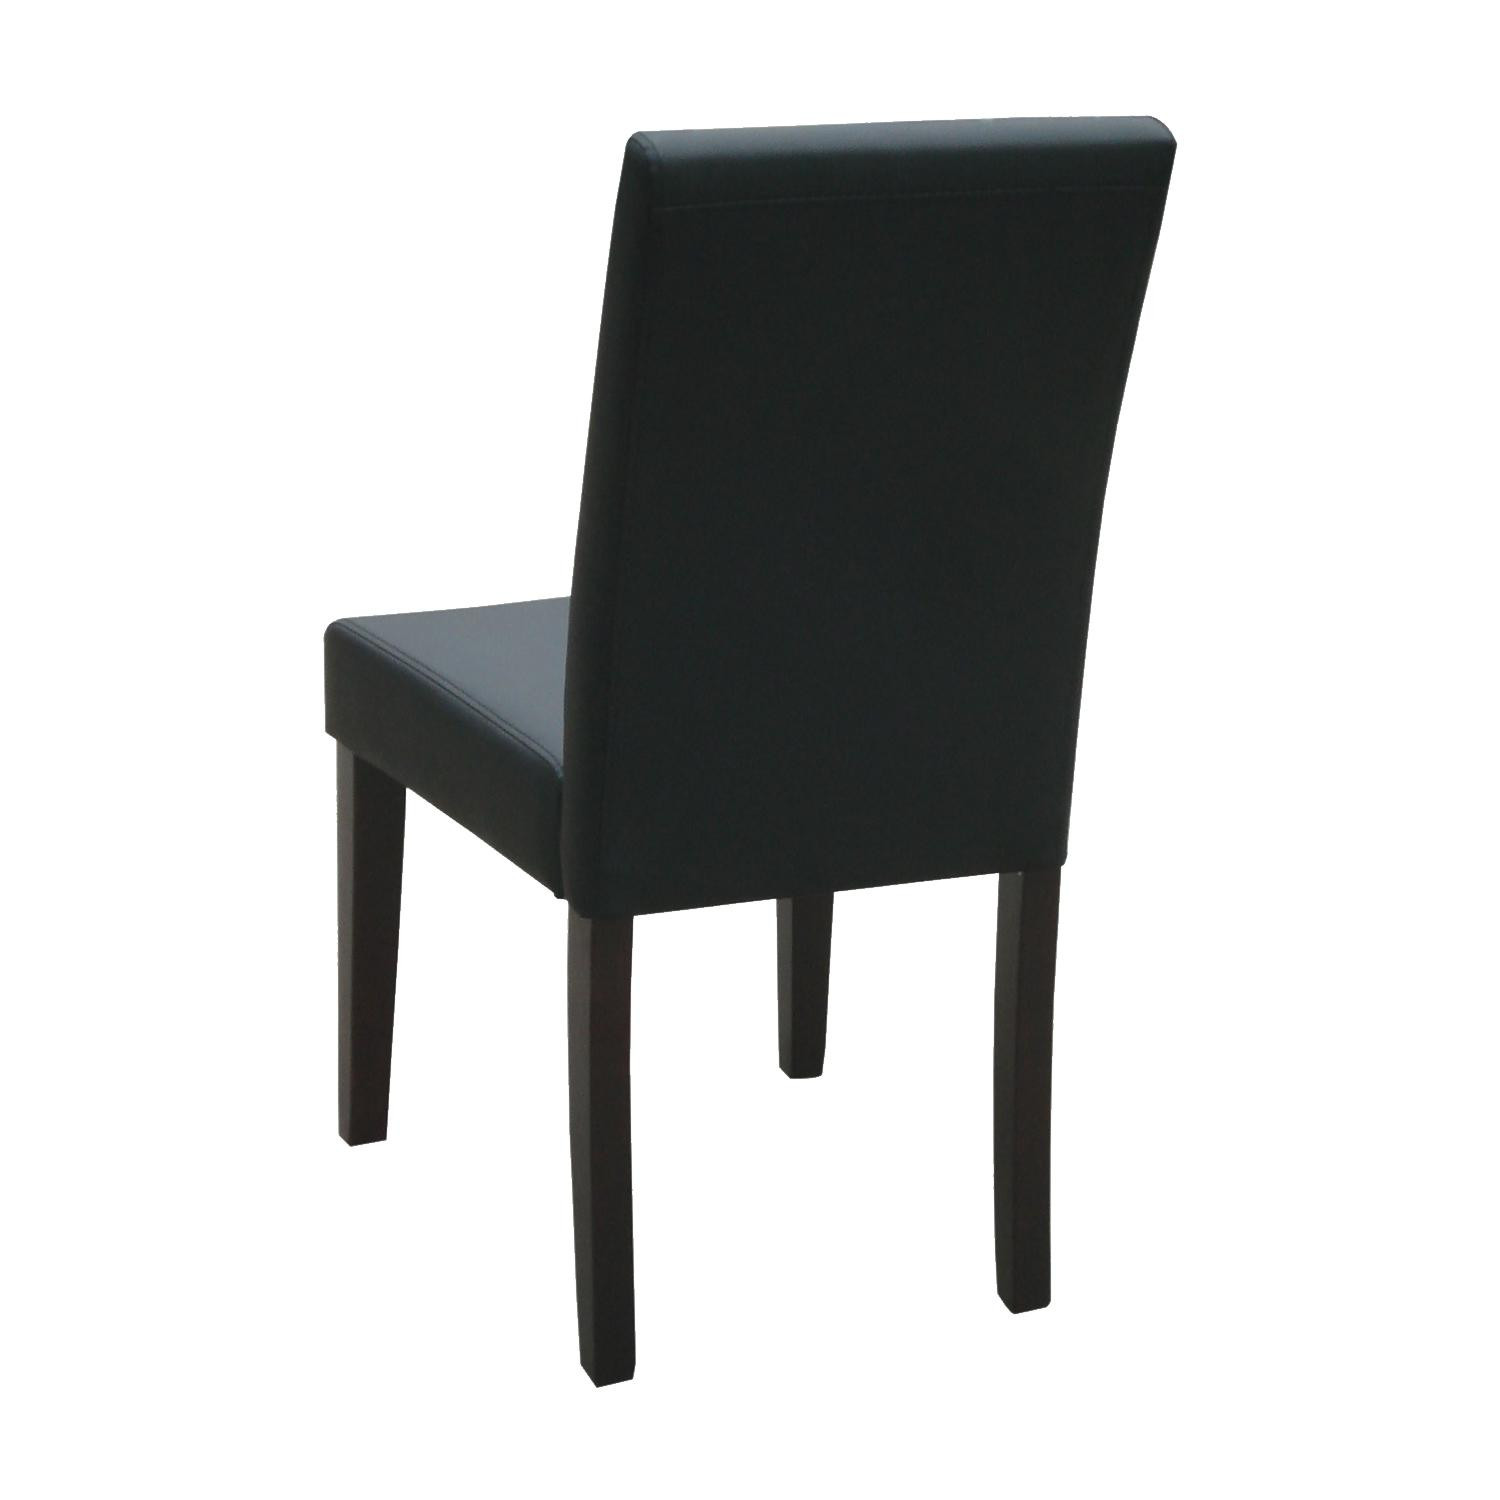 IDEA обеденный стул ПРИМА черный 3034